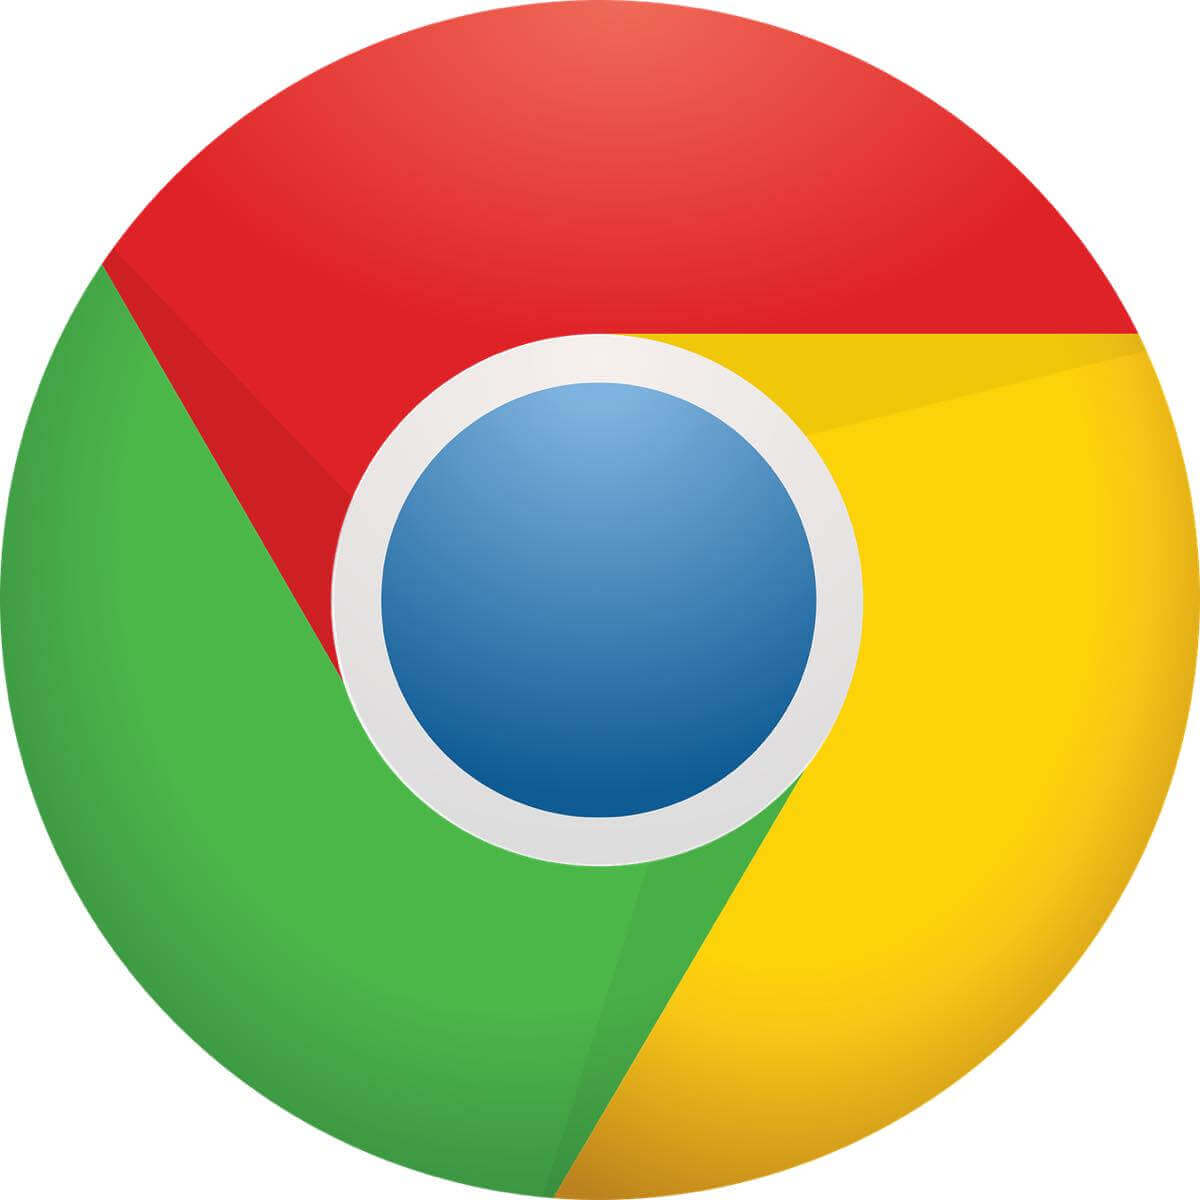 Google Chromeの混在コンテンツブロック強化に向けて対策を